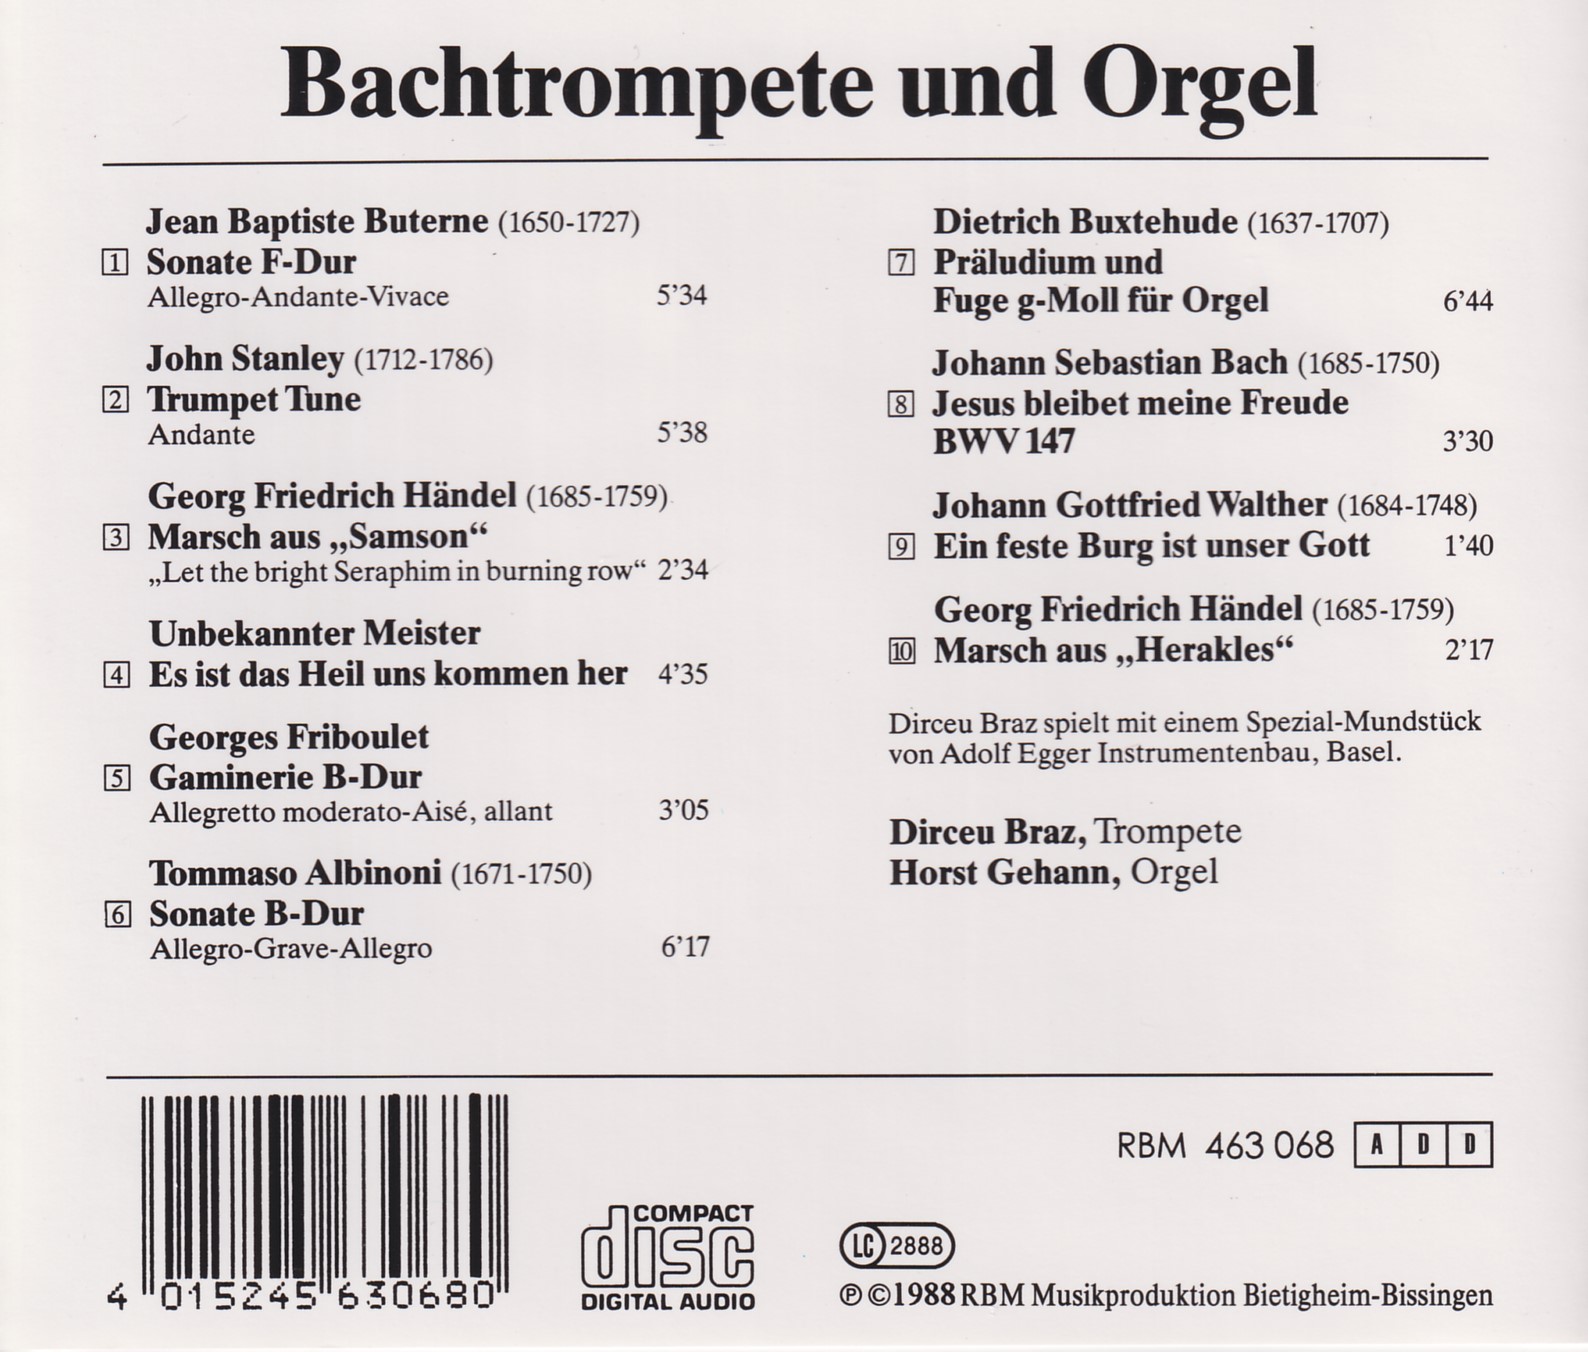 Bachtrompete und Orgel II - Dirceu Braz